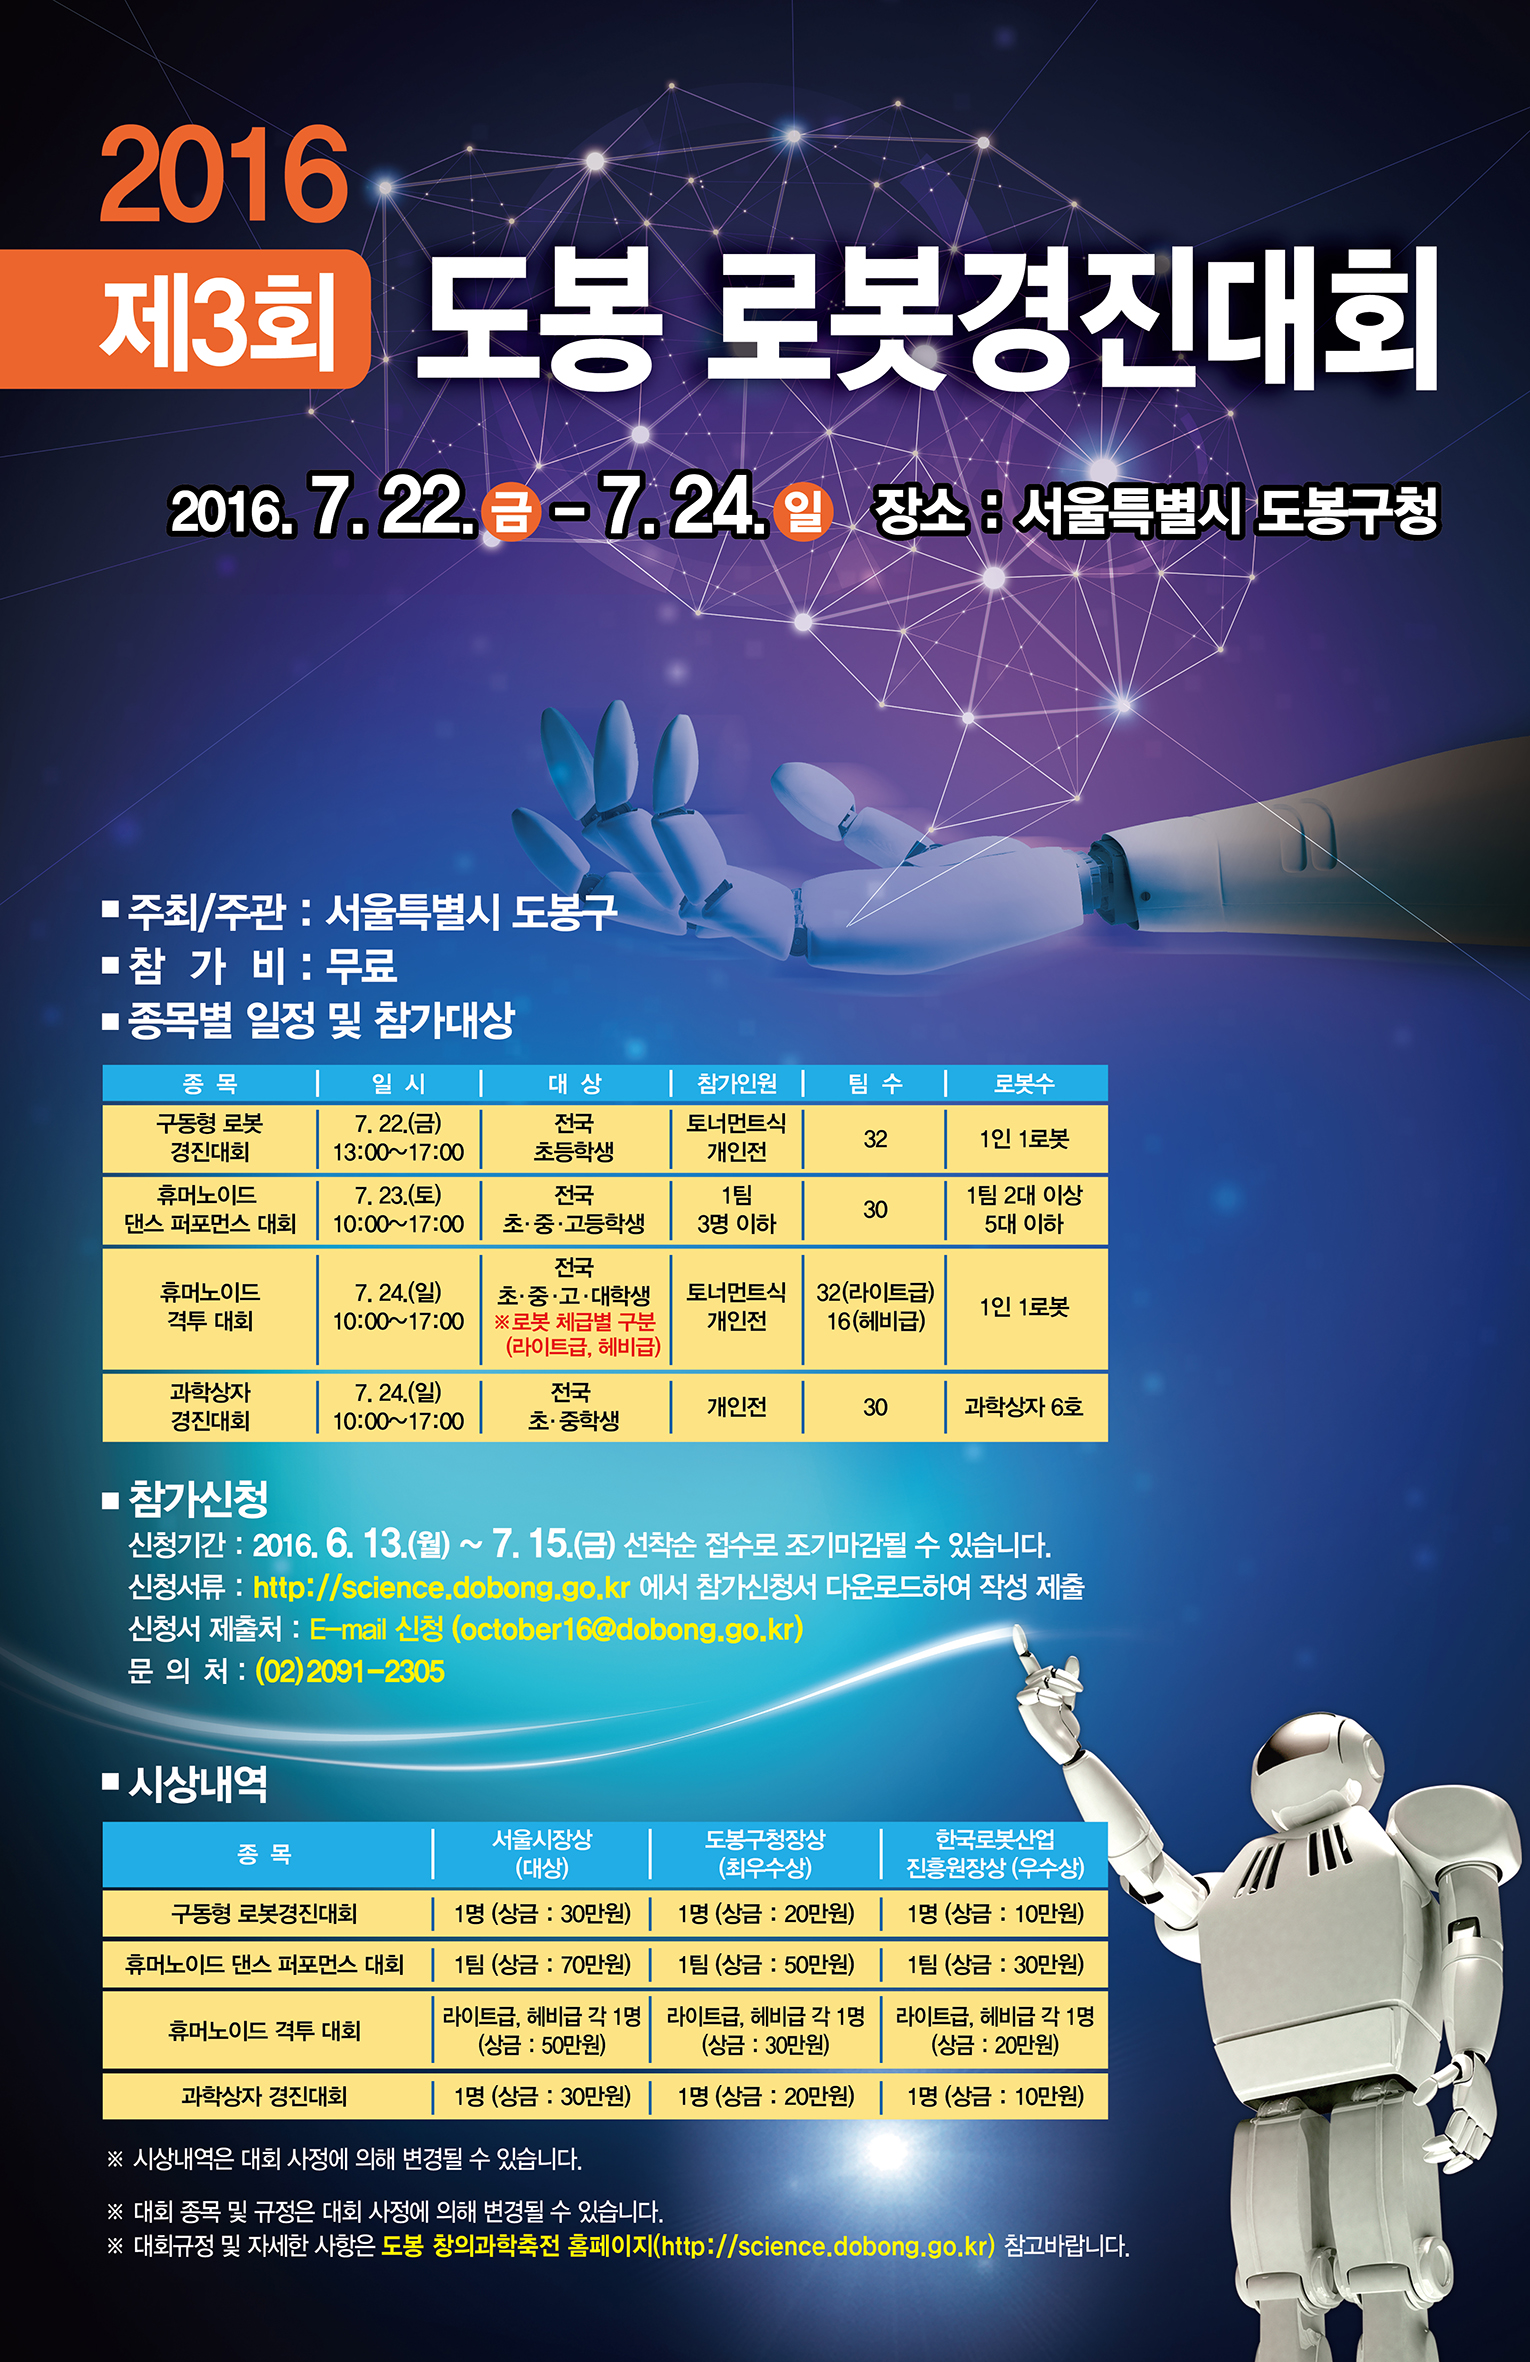 「제3회 도봉 로봇경진대회」개최안내 게시물의 첨부 이미지 1